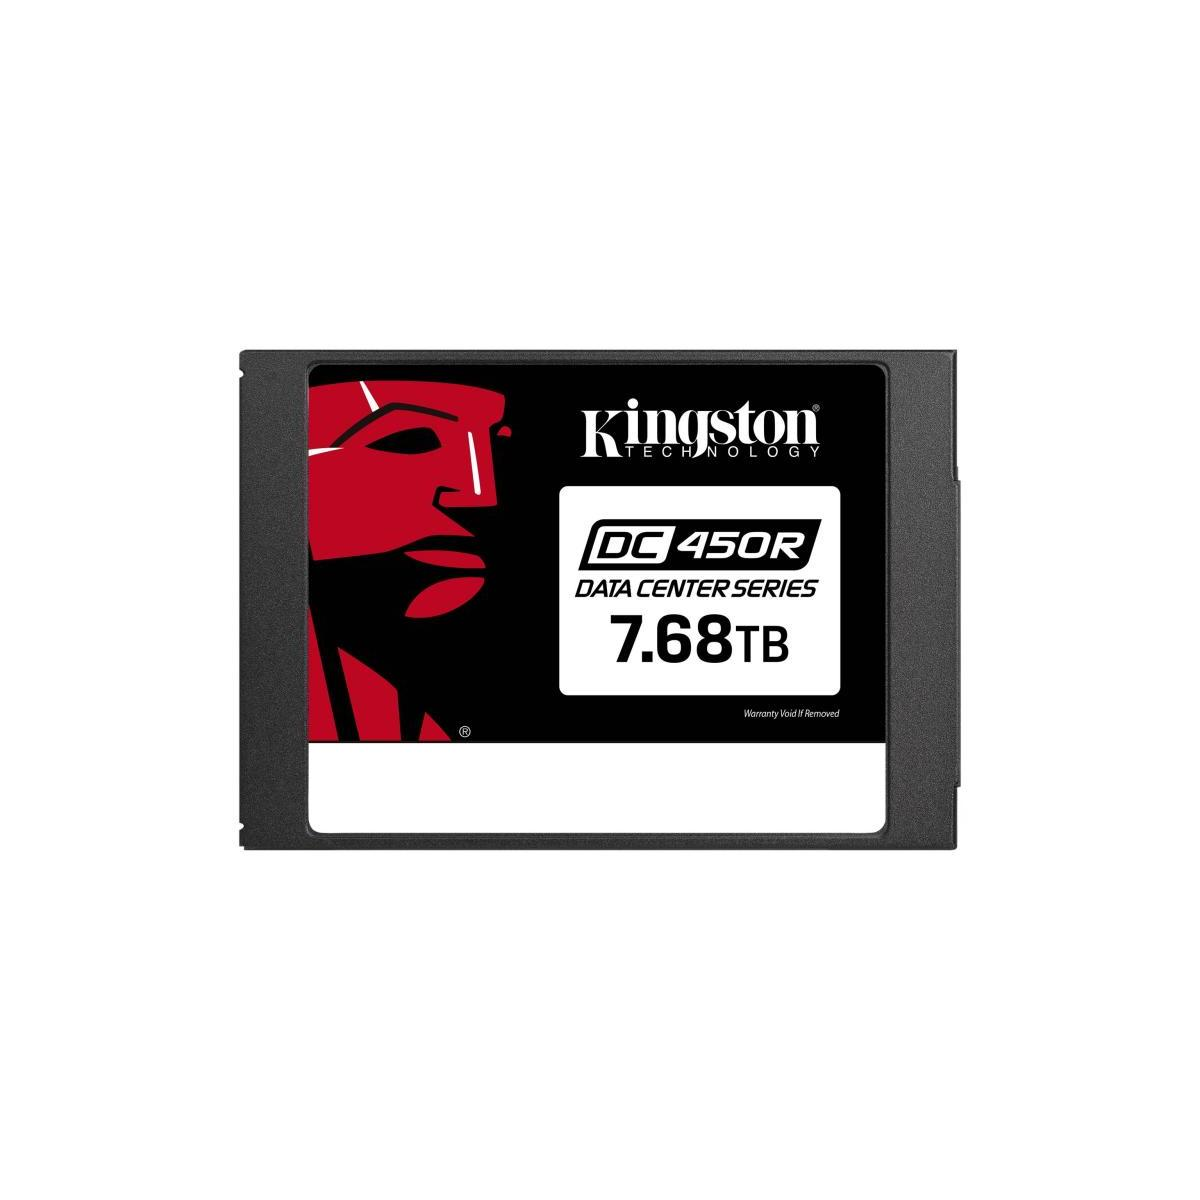 KINGSTON Kingston Data Center DC450R SSD, (SSD 6Gb/s, 2,5 - 7,68 verschlüsselt), Zoll, 7.68TB SATA intern, TB, intern